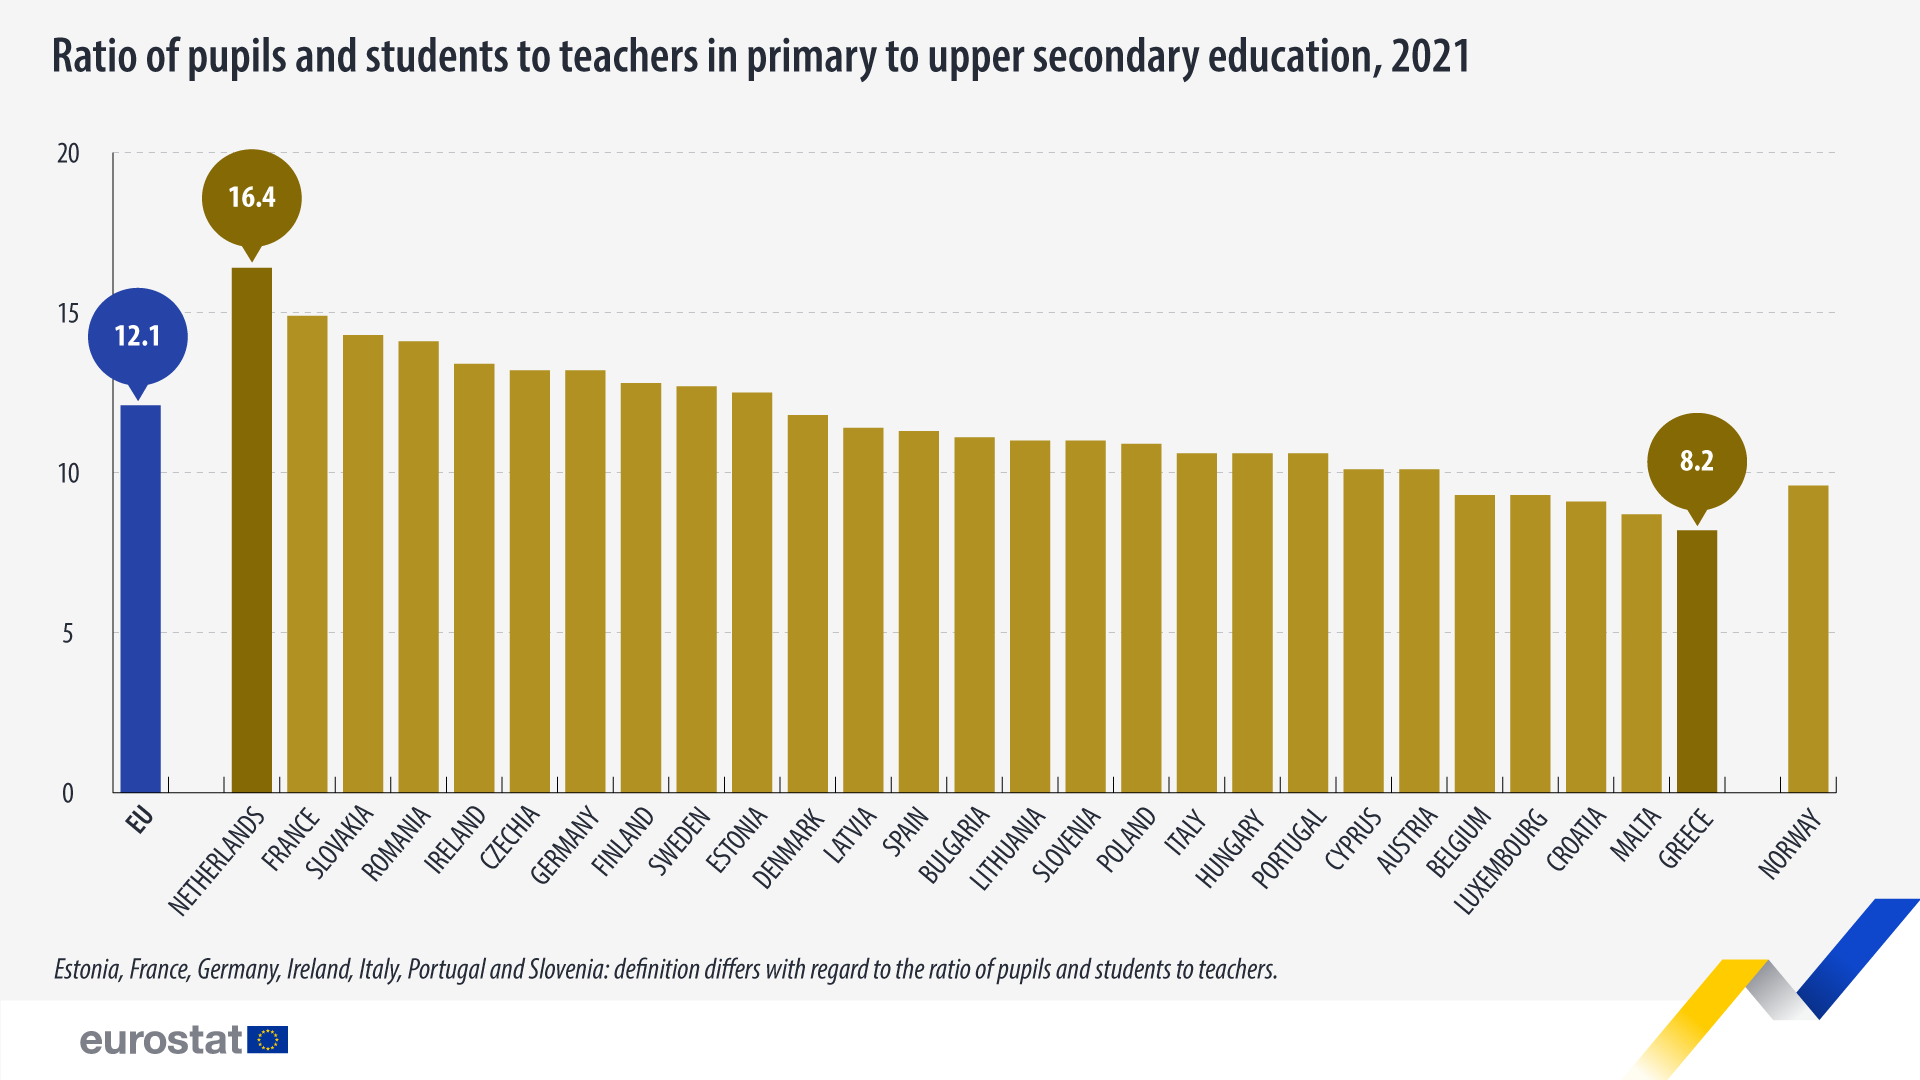 Gráfico de barras: Proporção de alunos e estudantes por professores do ensino primário ao secundário superior, 2021